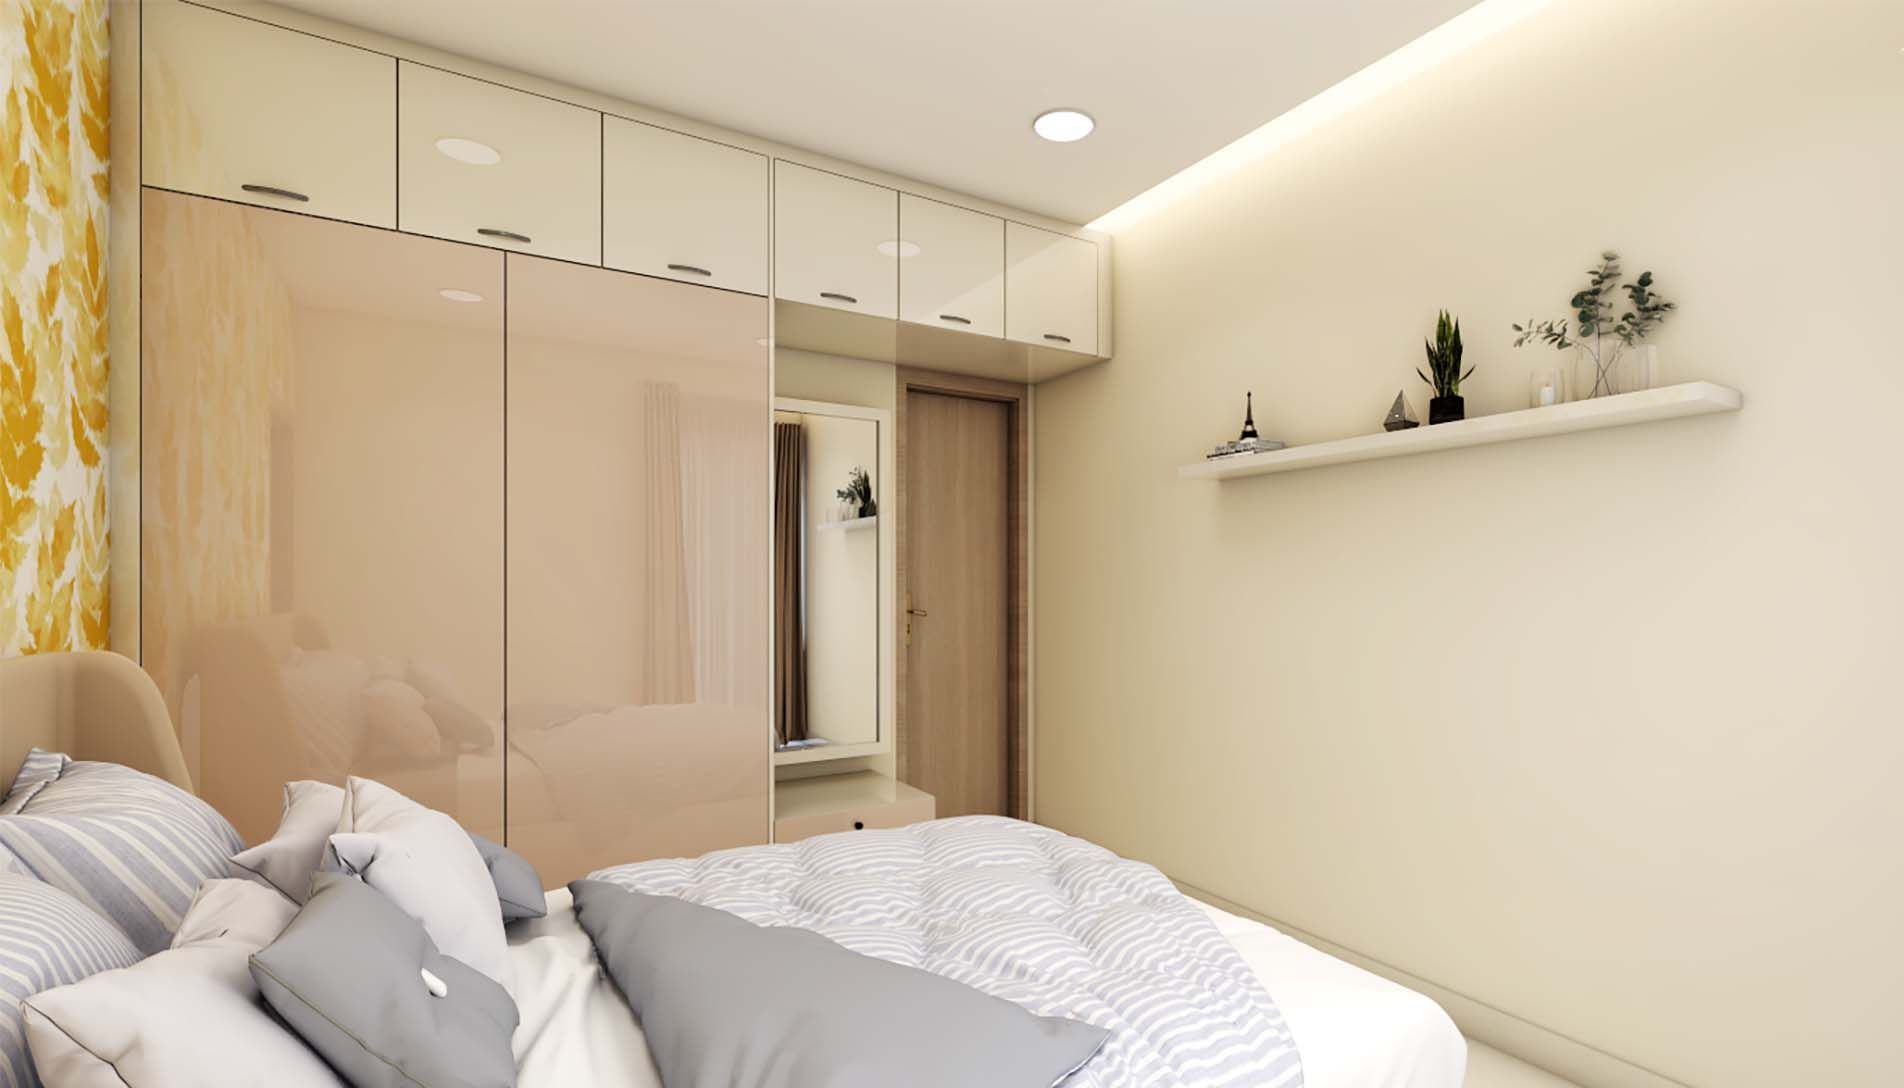 Contemporary 2-Door Wardrobe Design With Loft Storage